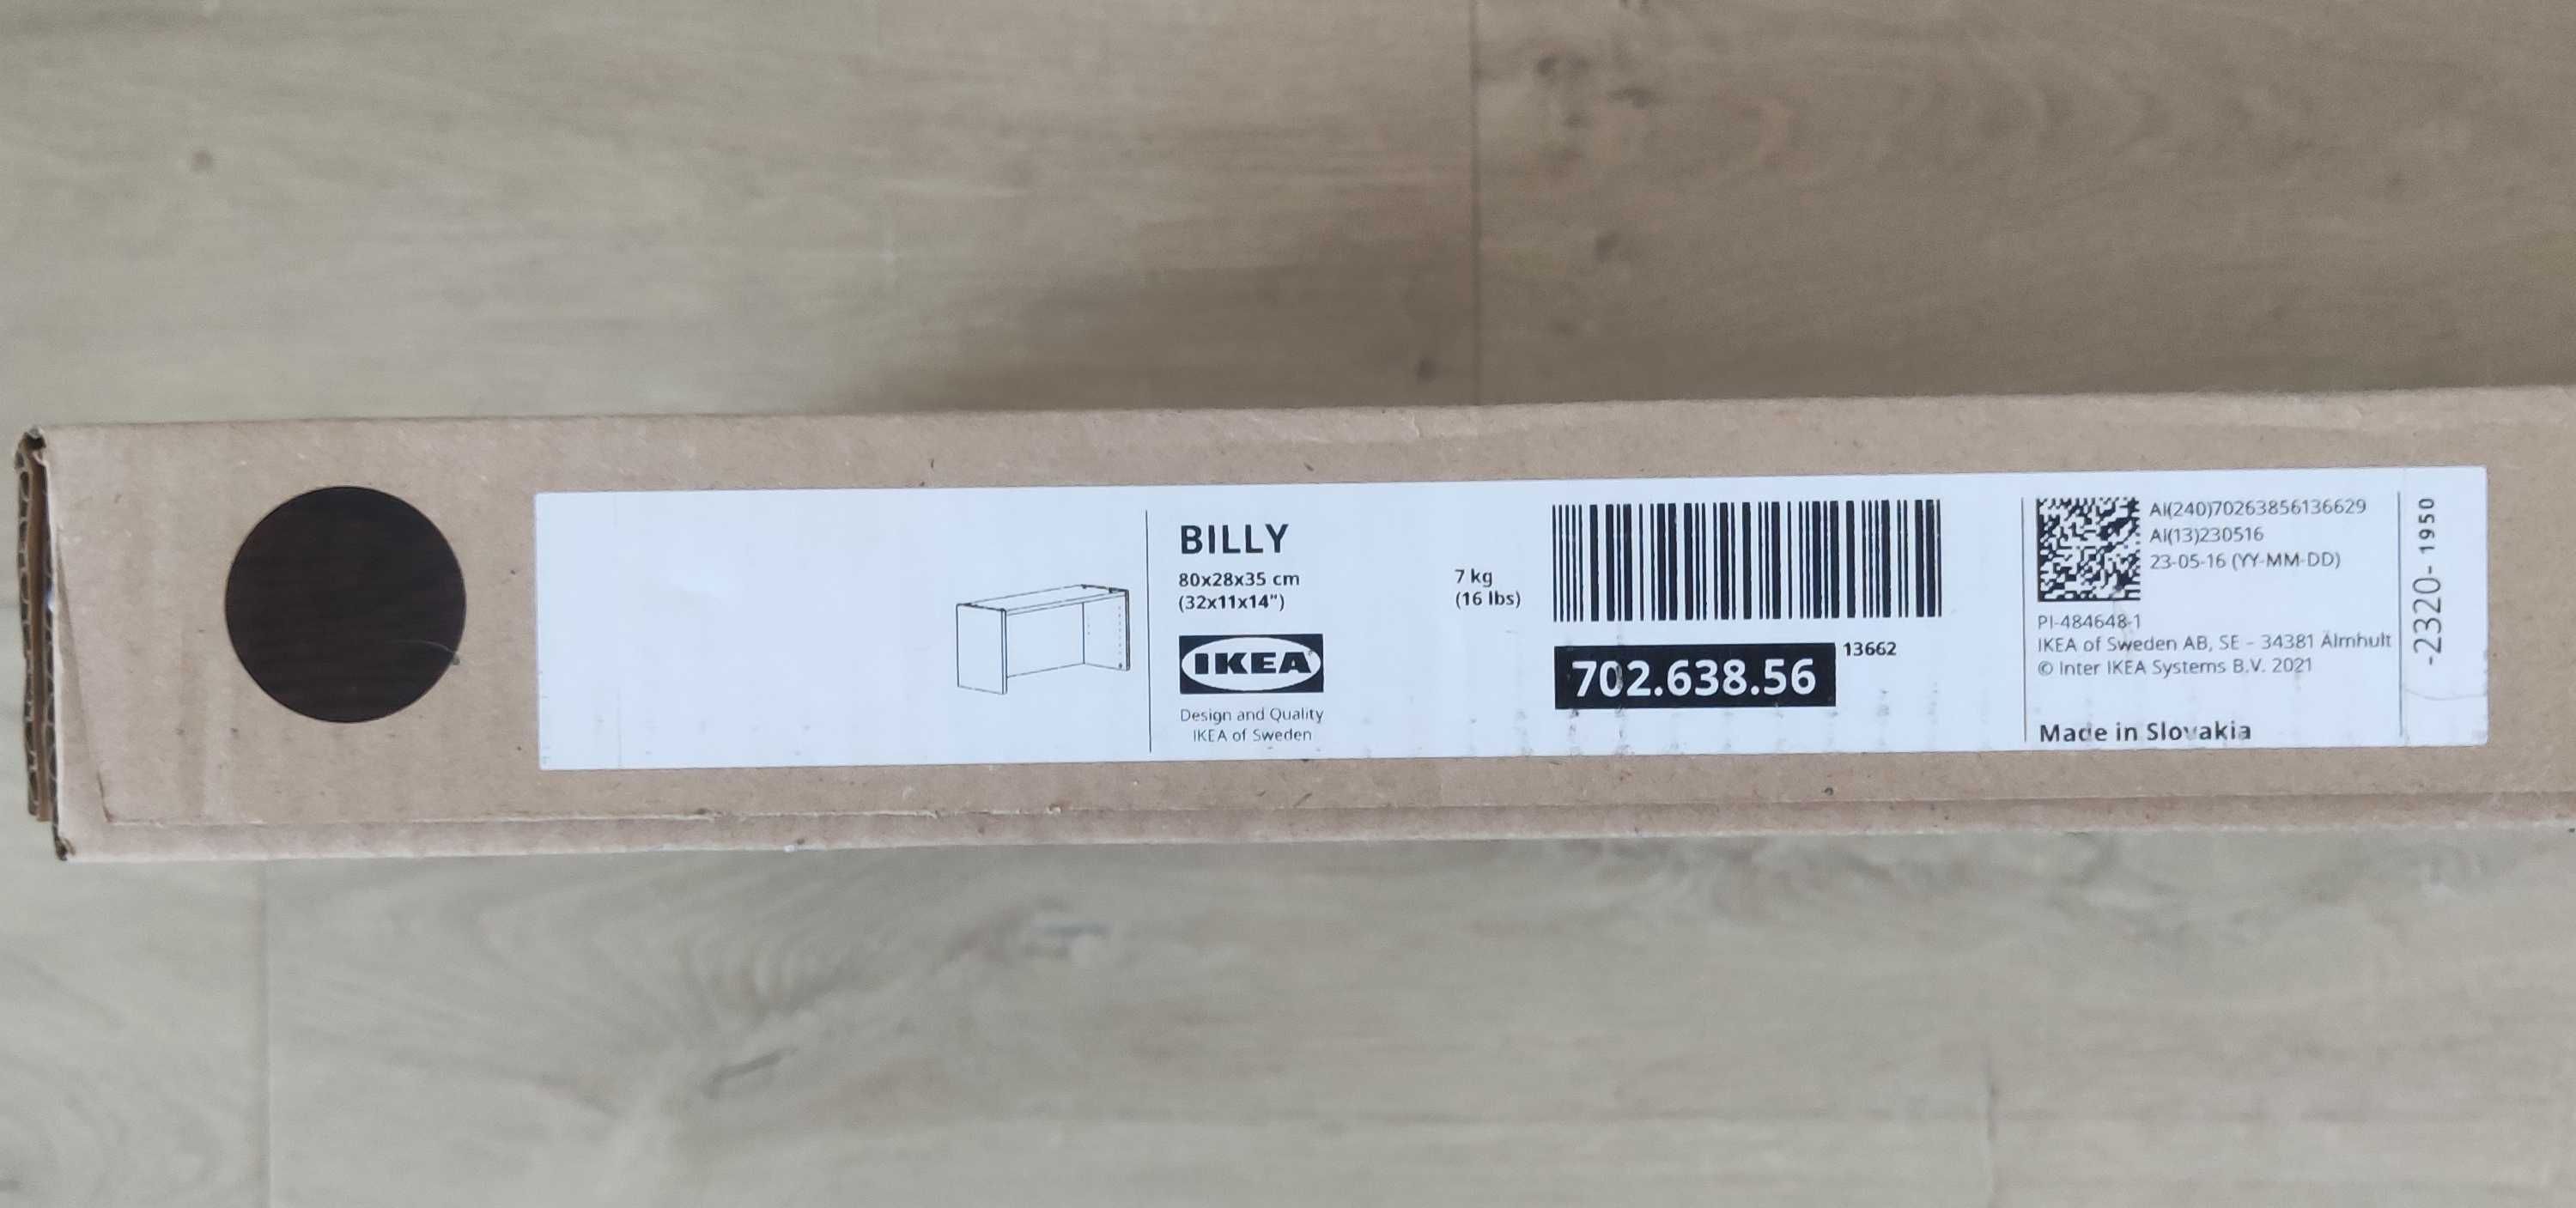 IKEA BILLY nadstawka, czarna  imit. dębu, 80x28x35 cm